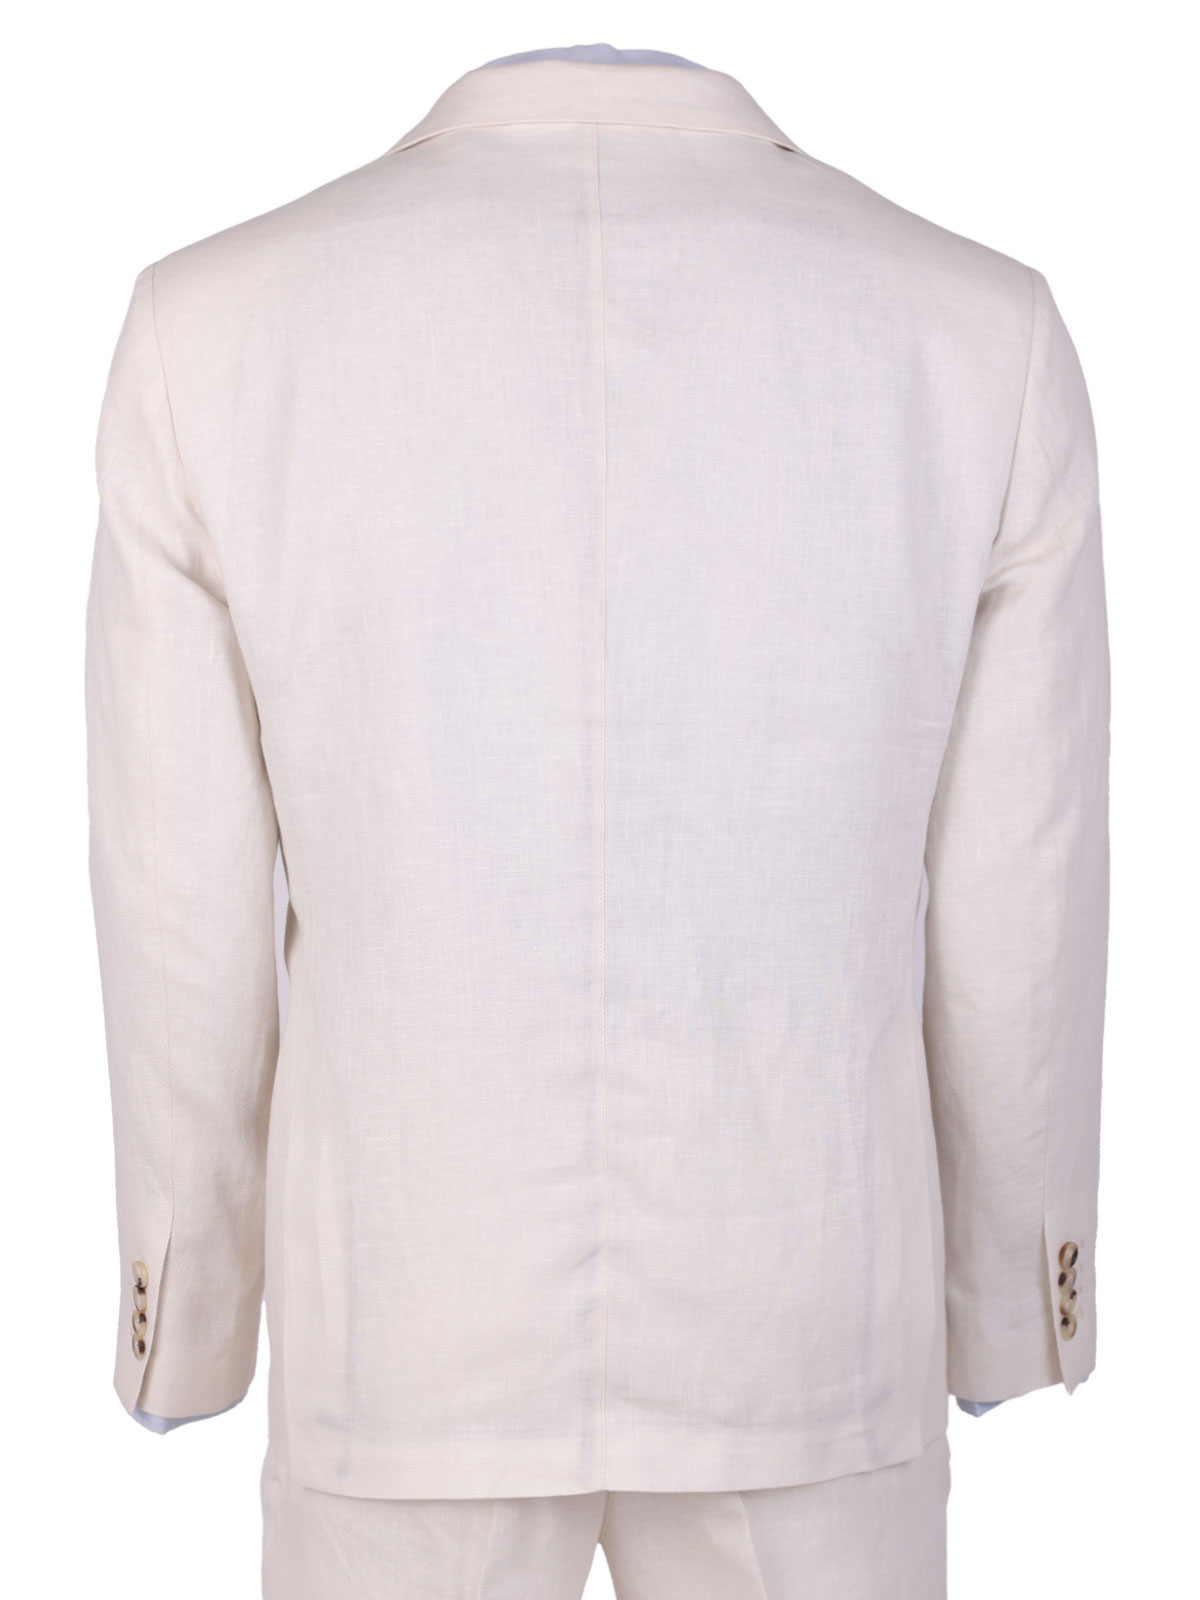 Ανδρικό λινό μπουφάν σε λευκό χρώμα - 61103 € 133.86 img2